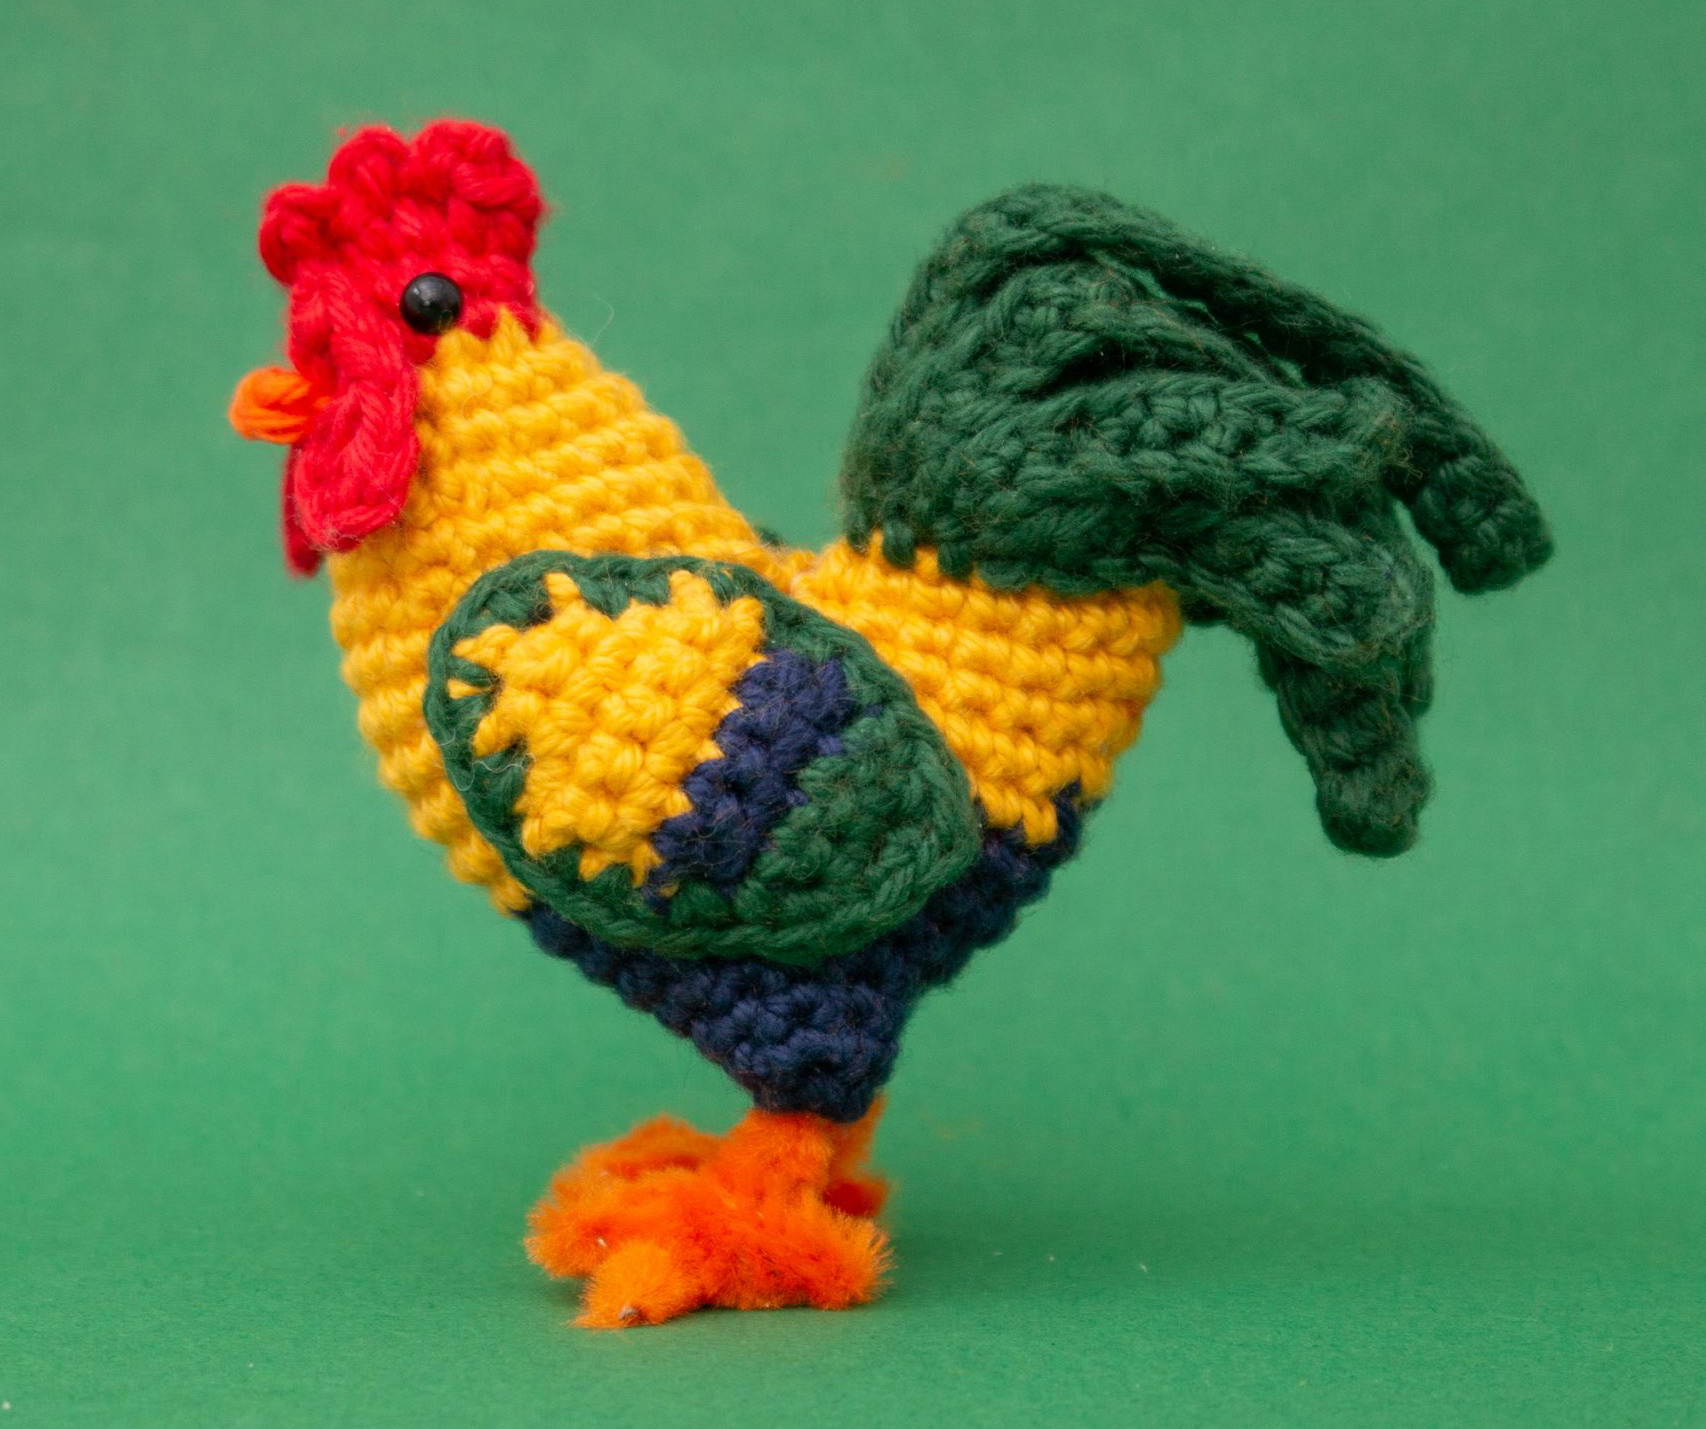 Crochet rooster pattern free